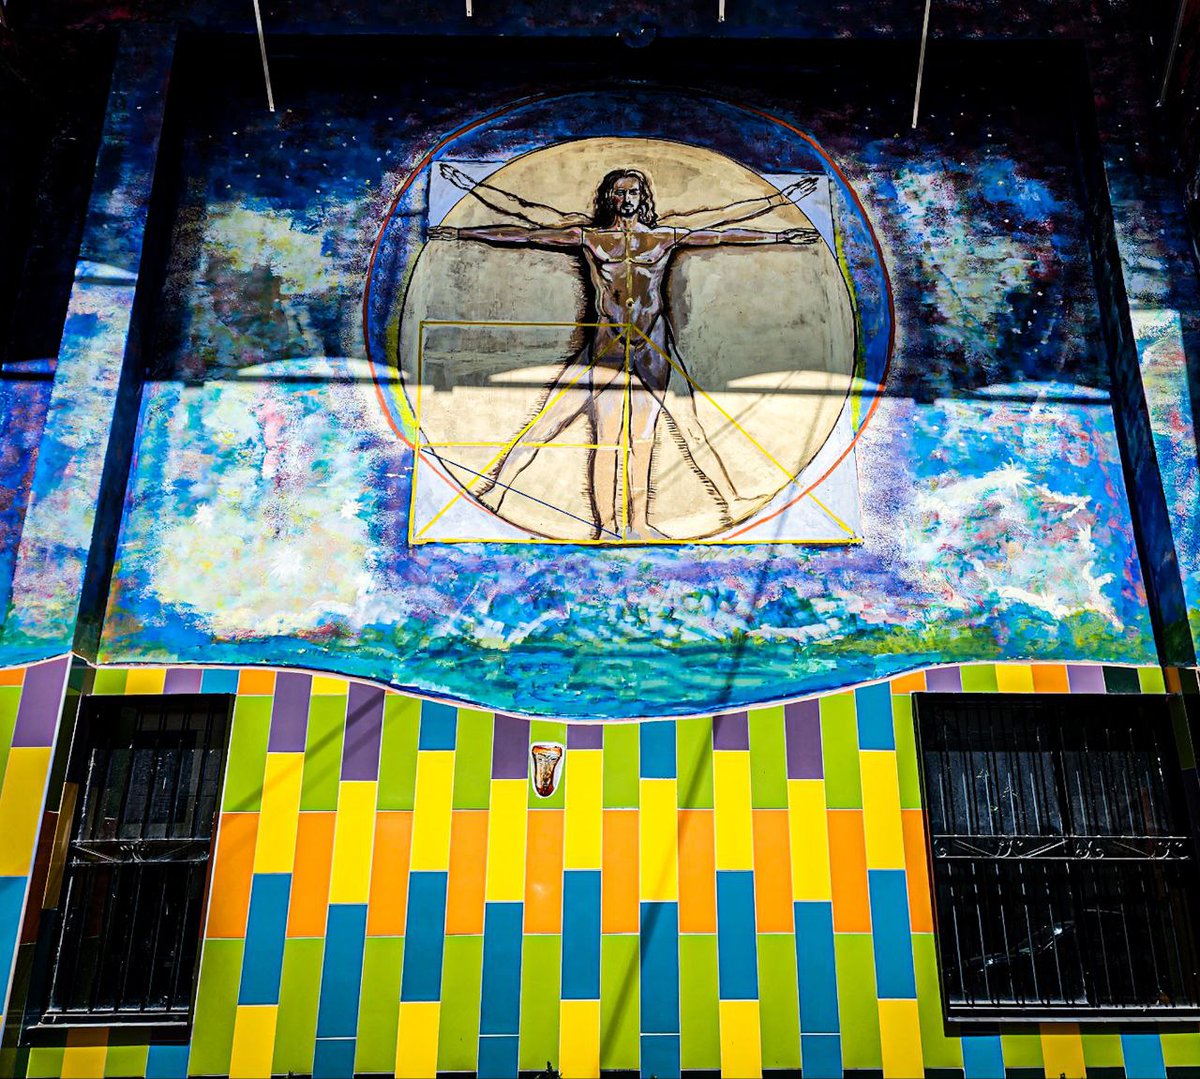 «El cuerpo humano es la creación suprema de Dios, la máxima expresión del Cosmos mismo».#LD 
📍Av. Vallarta, Guadalajara, Jalisco
#Photography #Traveling #Landscape #Murales #ArteUrbano #Art #streetart #streetartdaily #streetartphoto